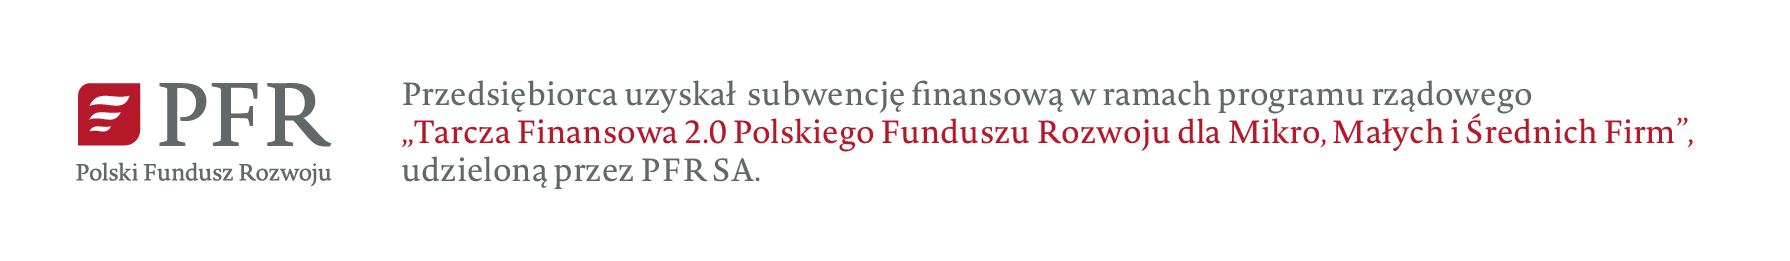 Firma BCS Software SA jest beneficjentem Subwencji Finansowej Polskiego Funduszu Rozwoju (Tarcza Finansowa PFR 2.0)